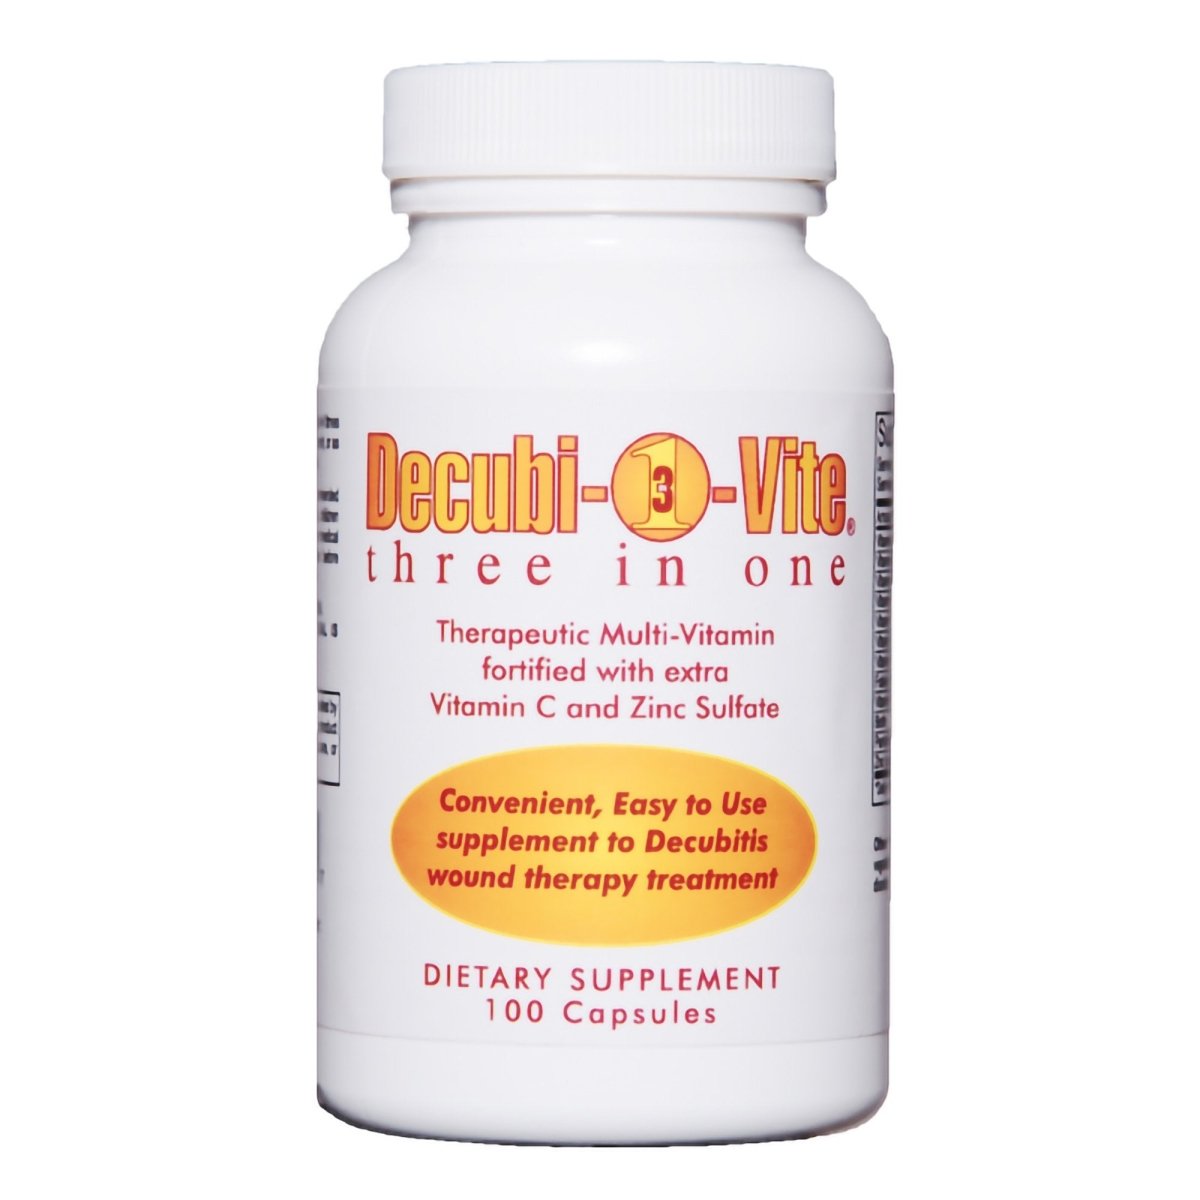 Decubi Vite Three In One Vitamin / Minerals Multivitamin Supplement - 772098_BT - 1